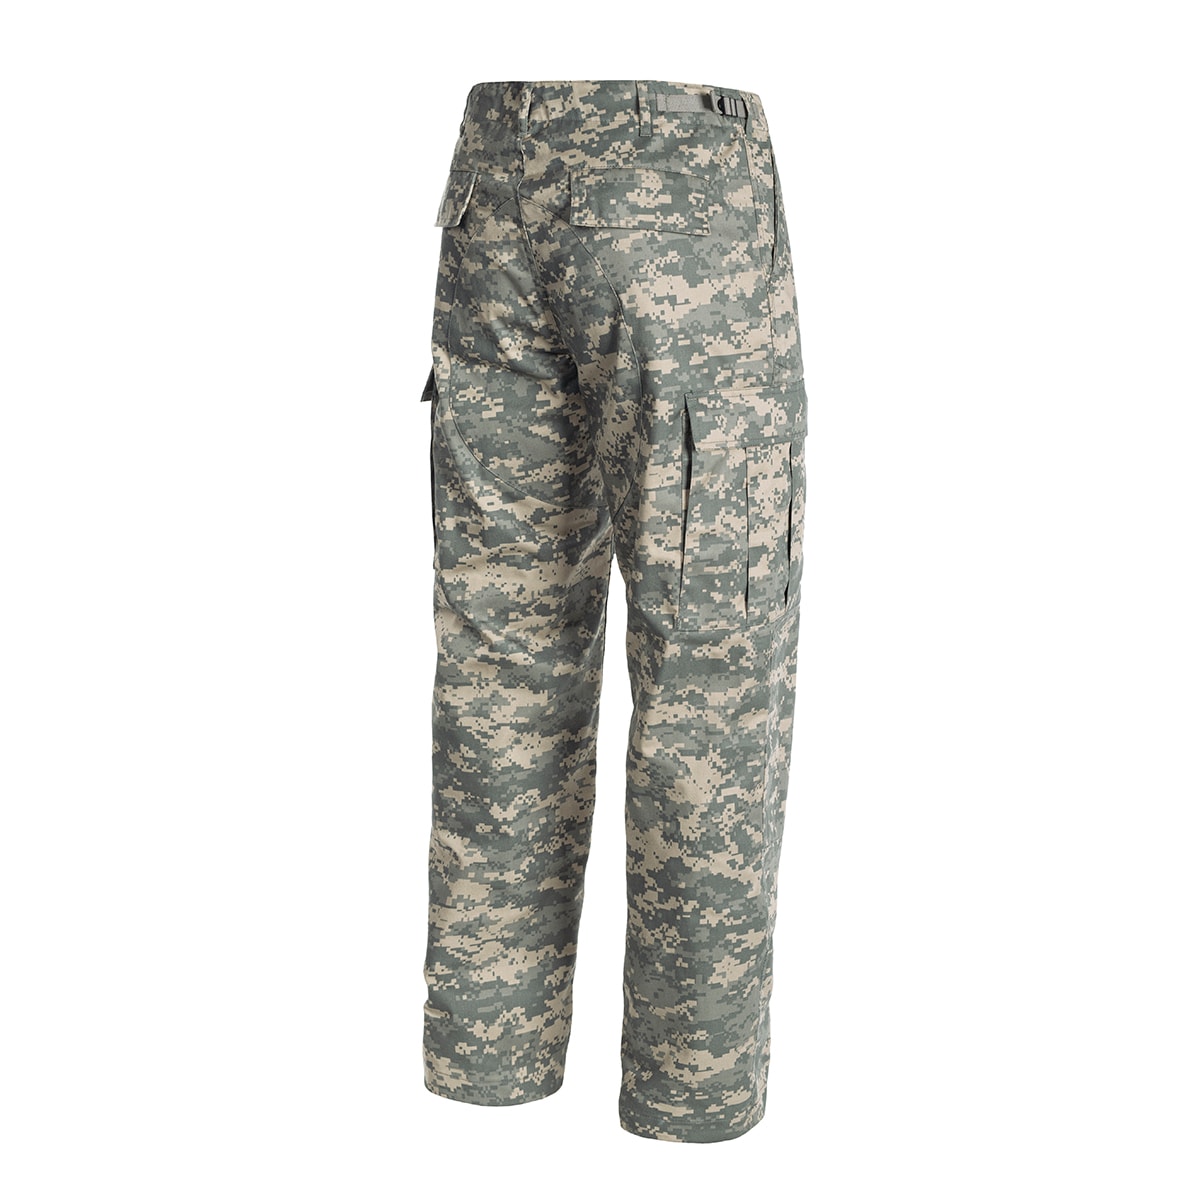 Spodnie wojskowe Mil-Tec wzmacniane BDU AT-Digital